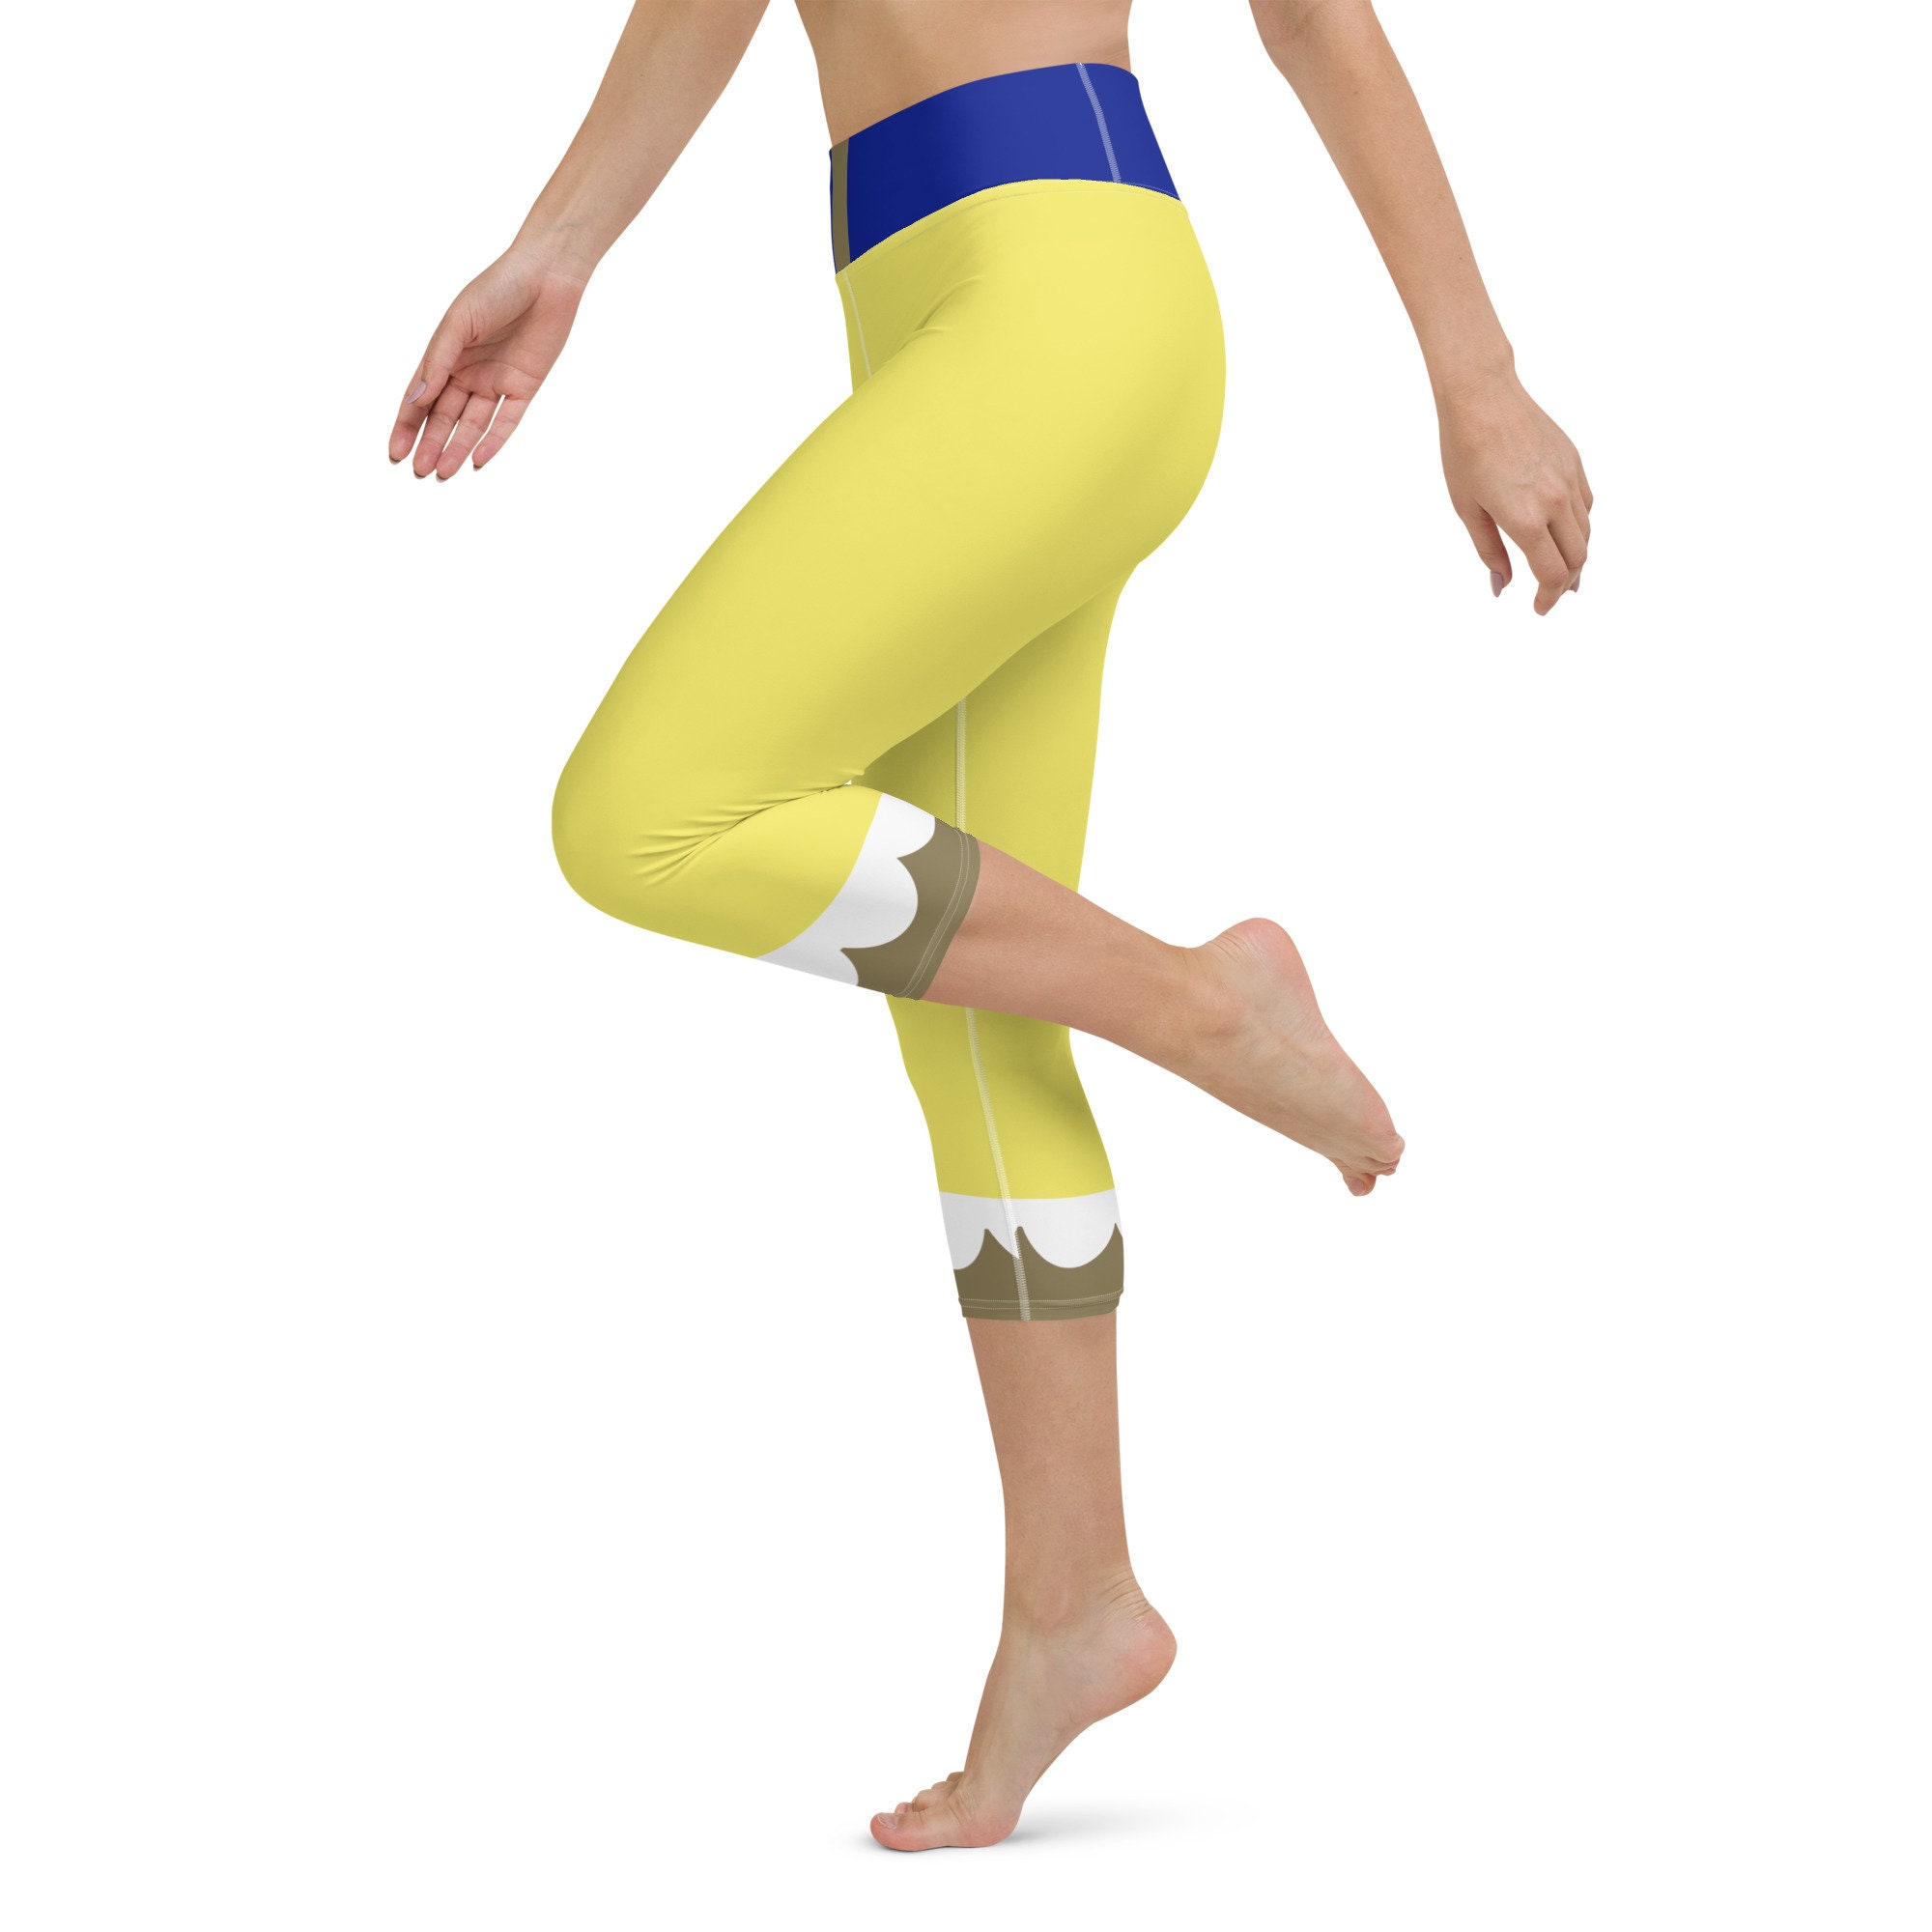 Snow White Inspired Running Costume Yoga Capri Leggings